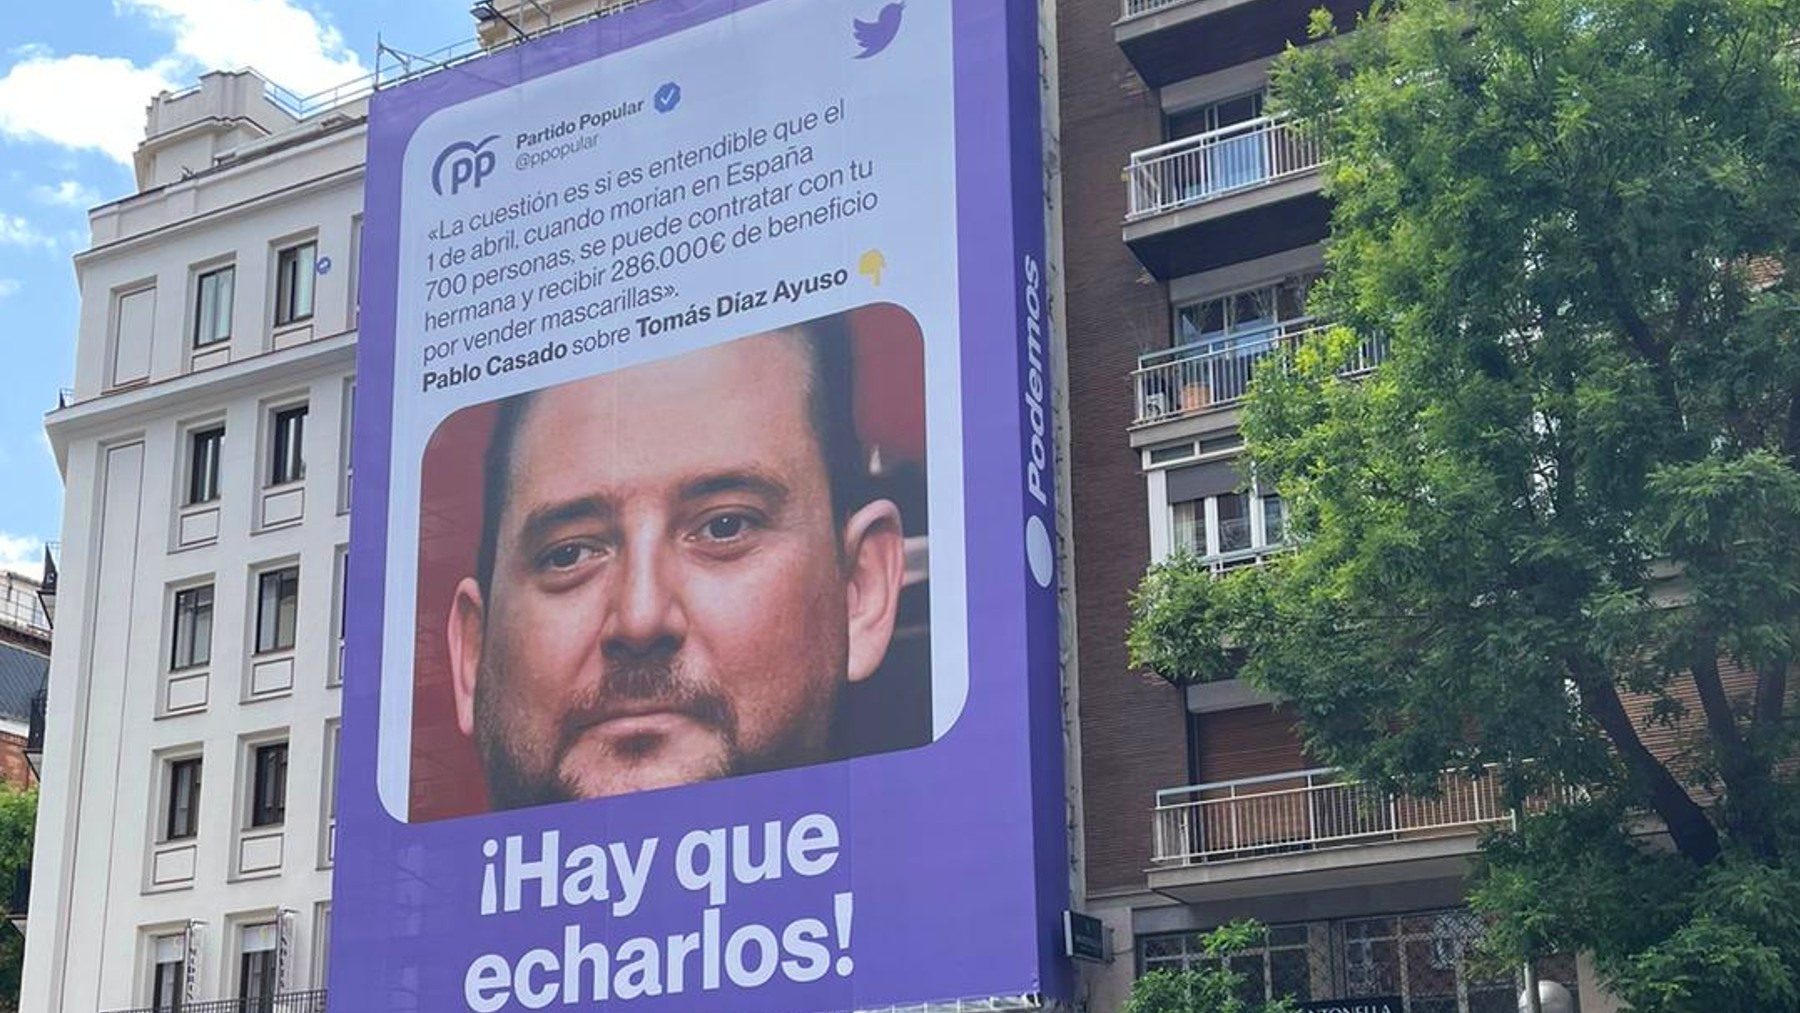 La lona de Podemos.